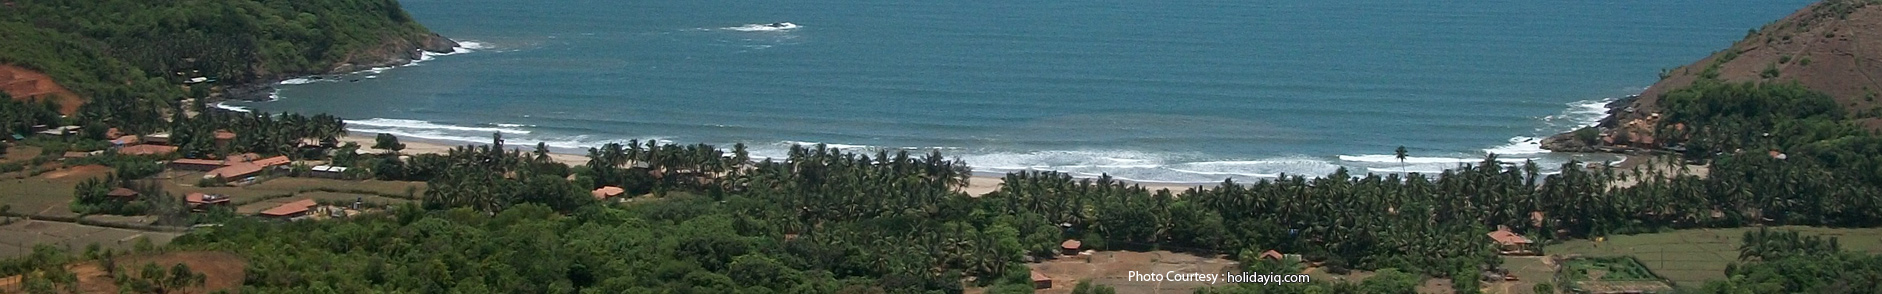 Beaches of Karnataka